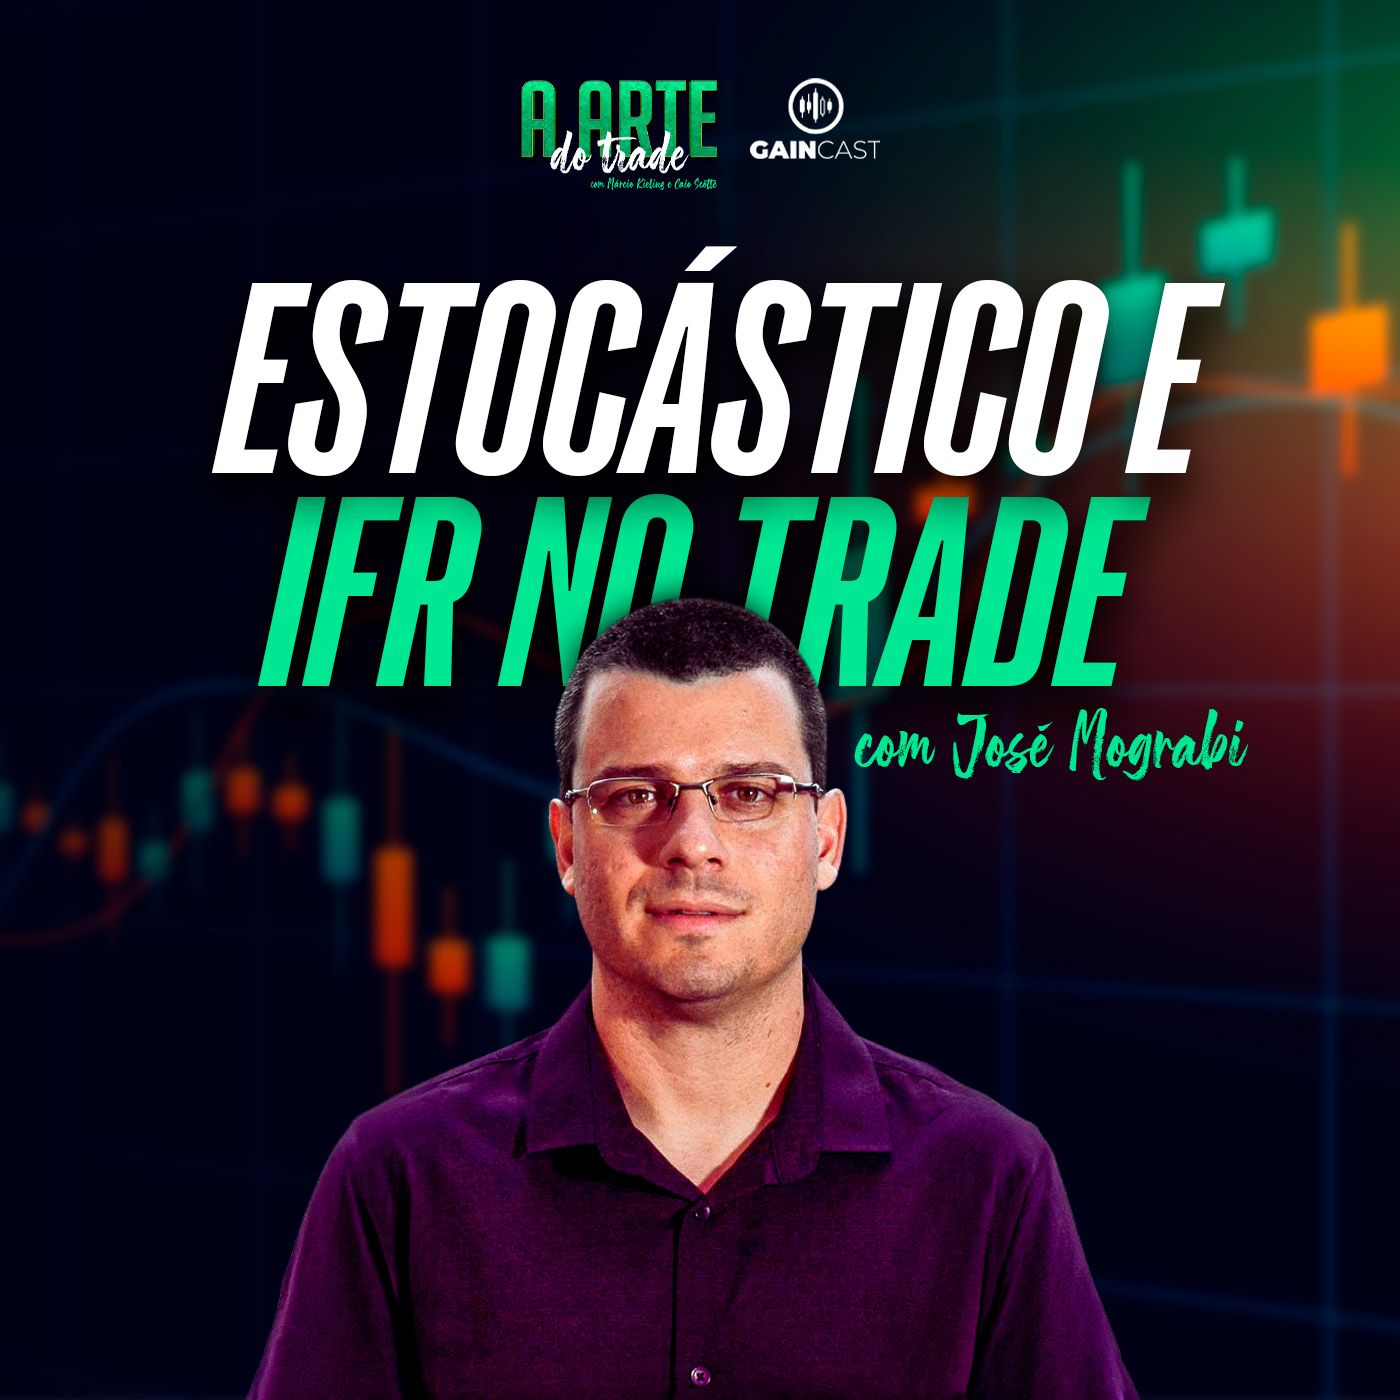 Meus trades usando estocástico e IFR - José Mograbi | A Arte do Trade 1